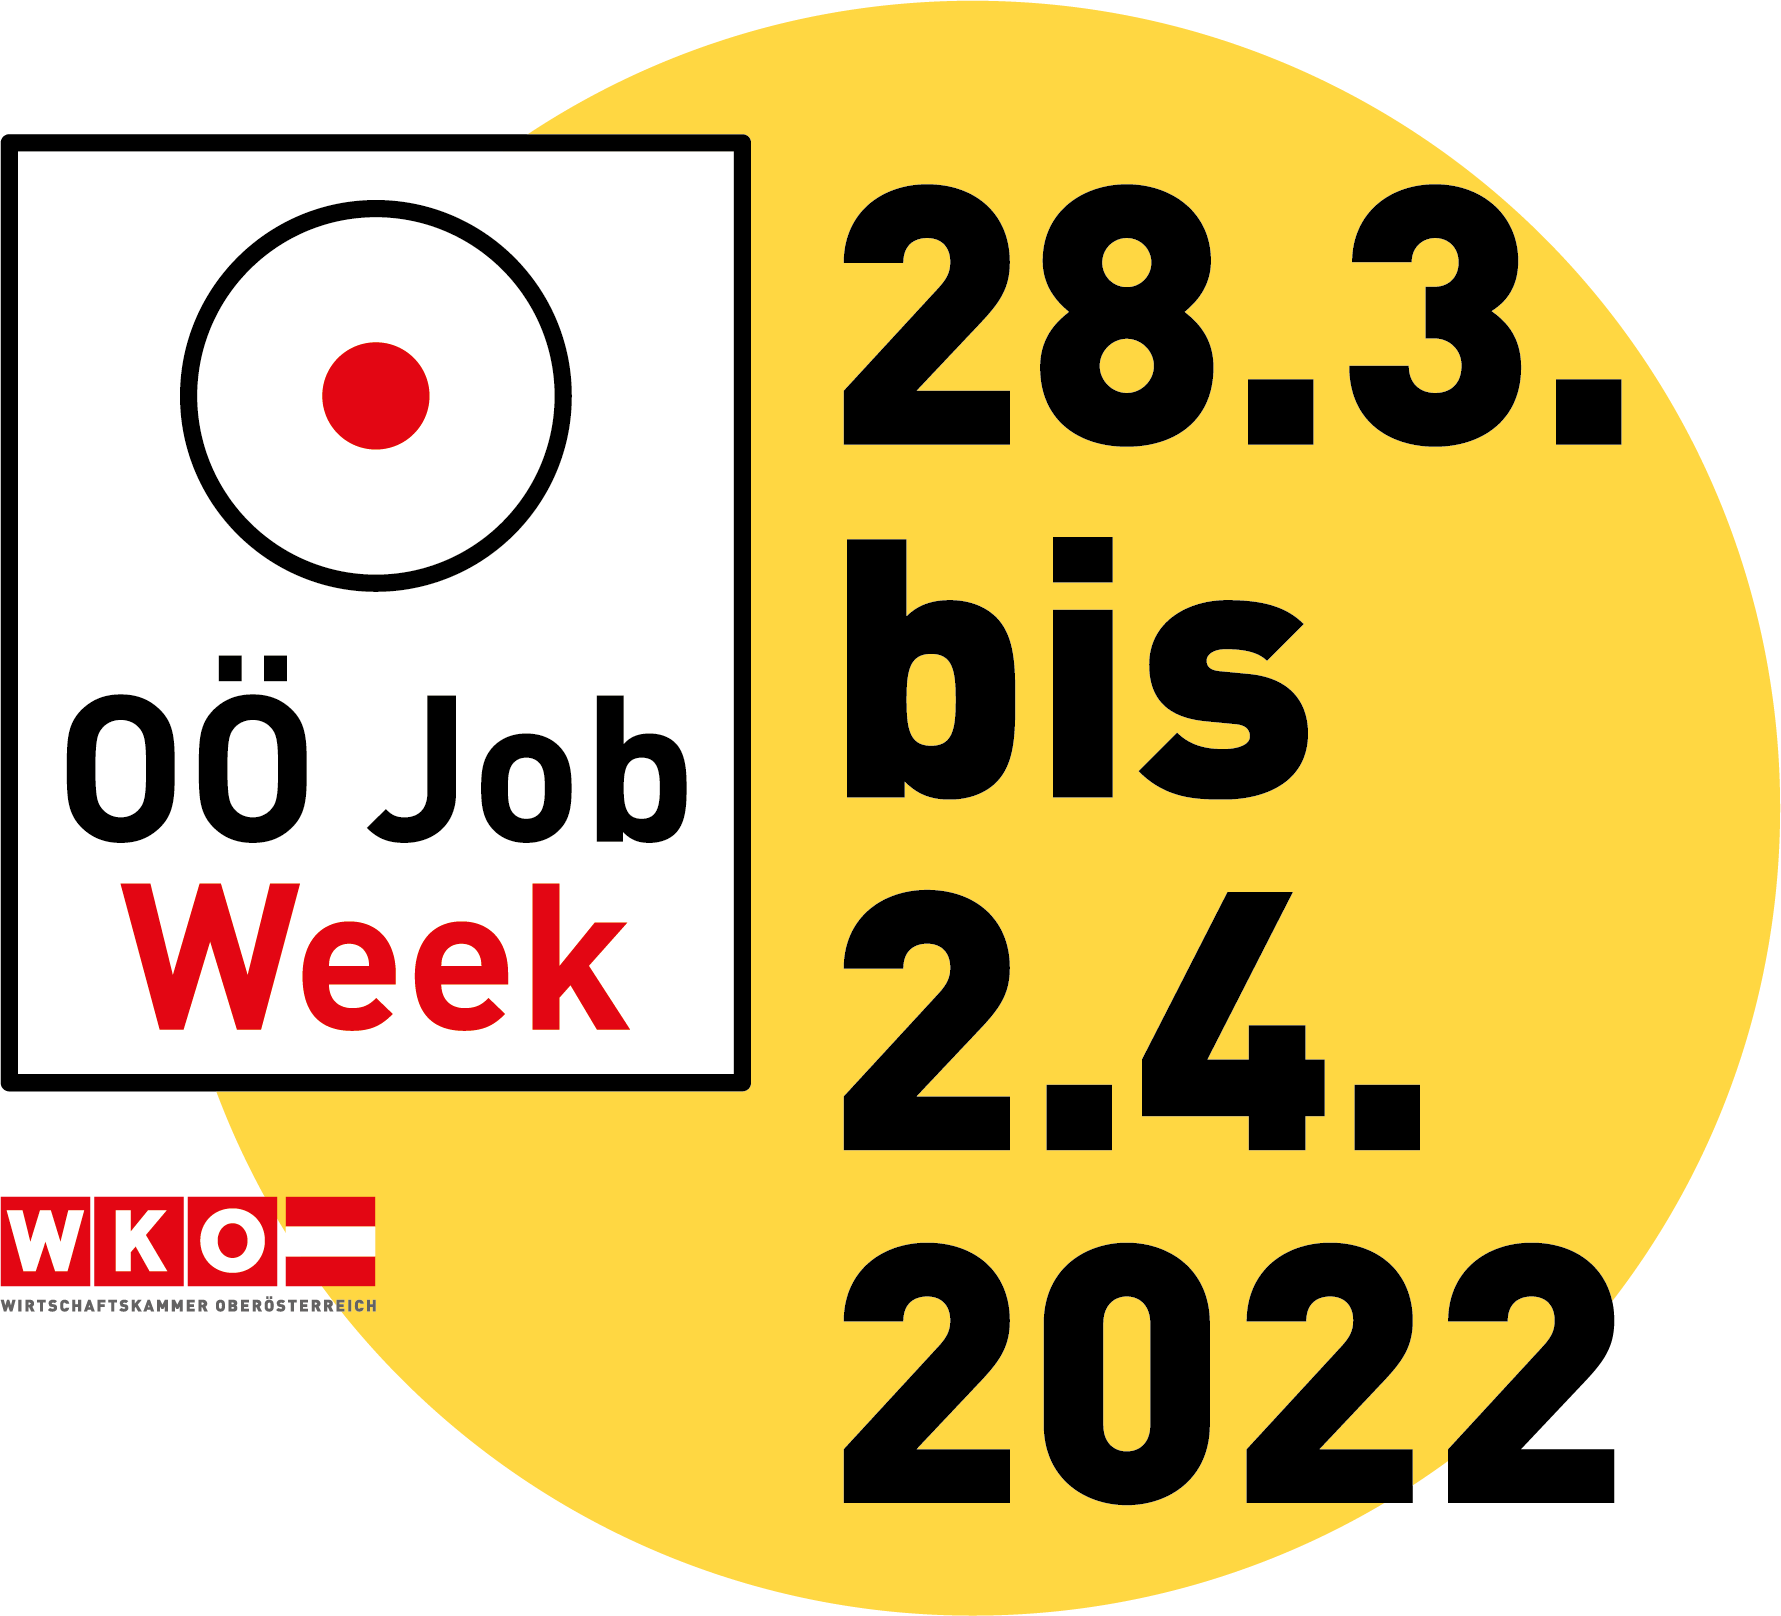 Wir sind dabei bei der OÖ Job Week von 28.3. - 2.4.2022!